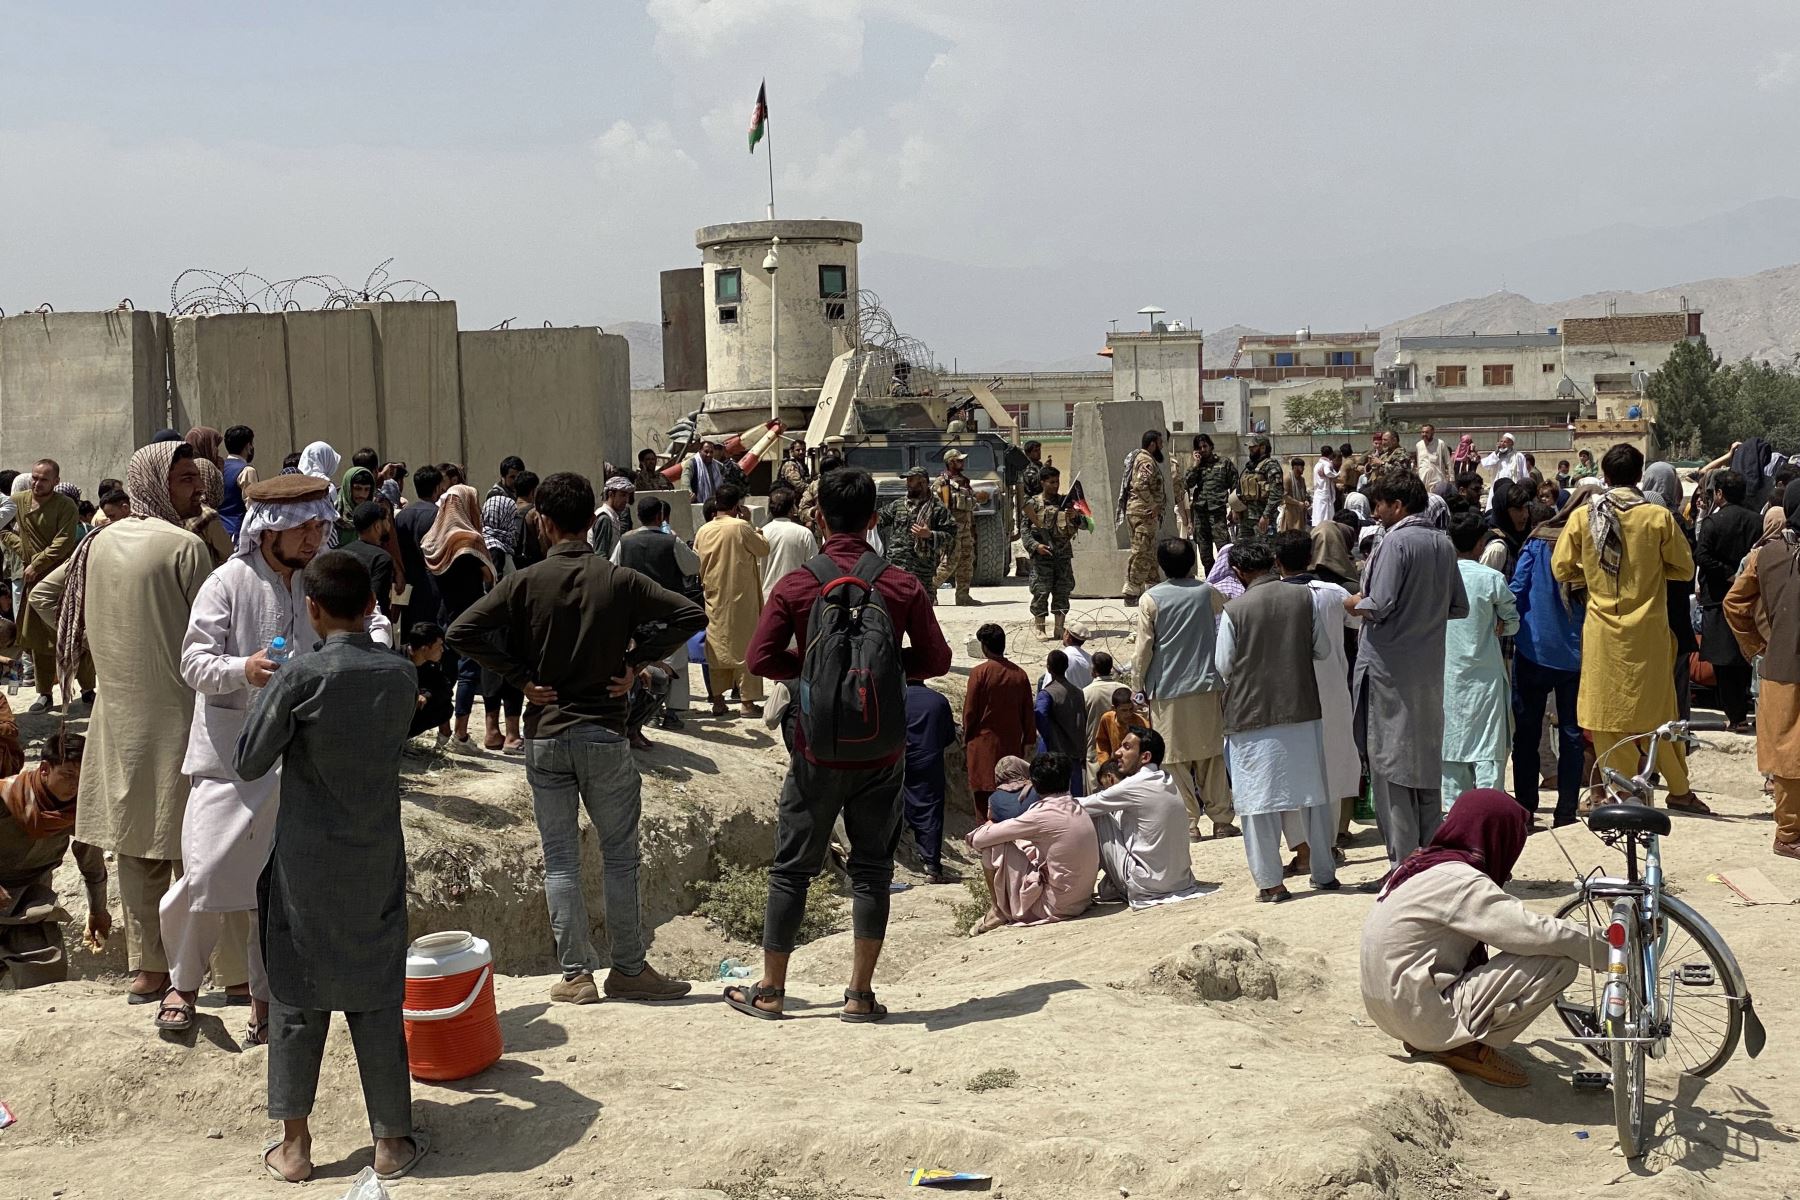 Los afganos se reúnen frente al aeropuerto internacional Hamid Karzai para huir del país, después de que los talibanes tomaran el control de Kabul, Afganistán.
Foto: EFE